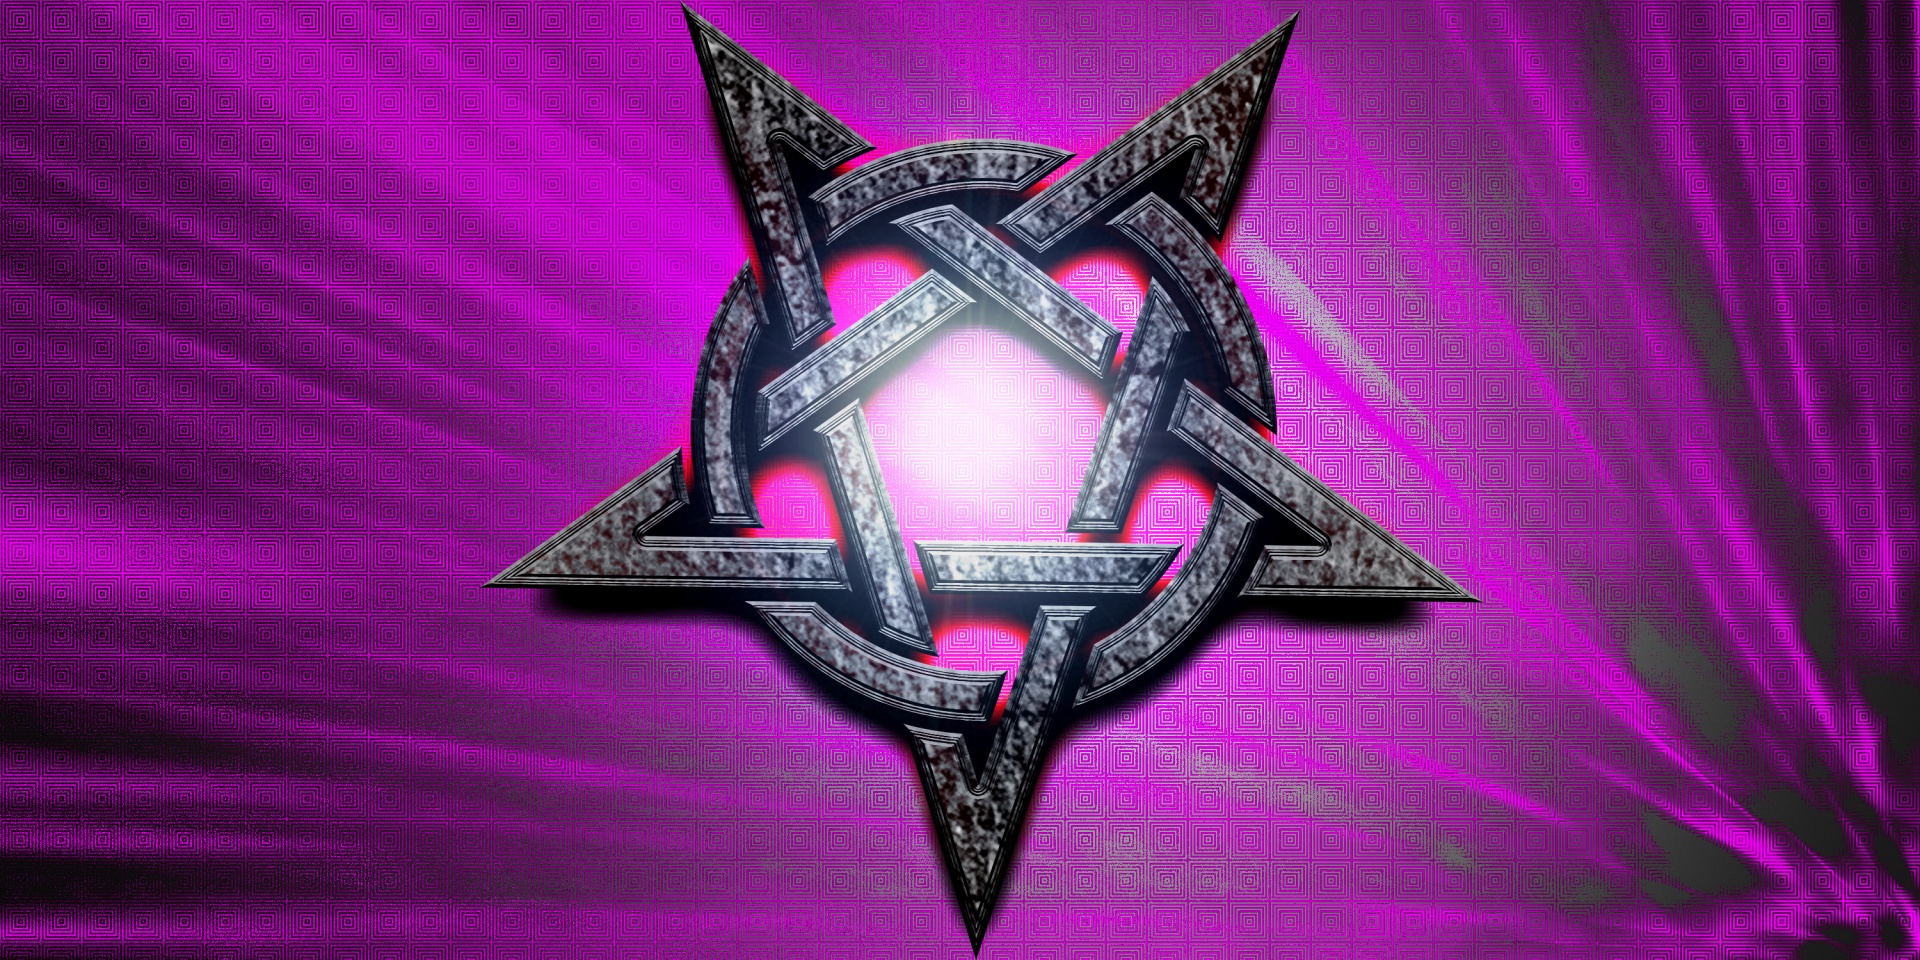 Pentacle Sign Magic Symbol Background Image From Needpix